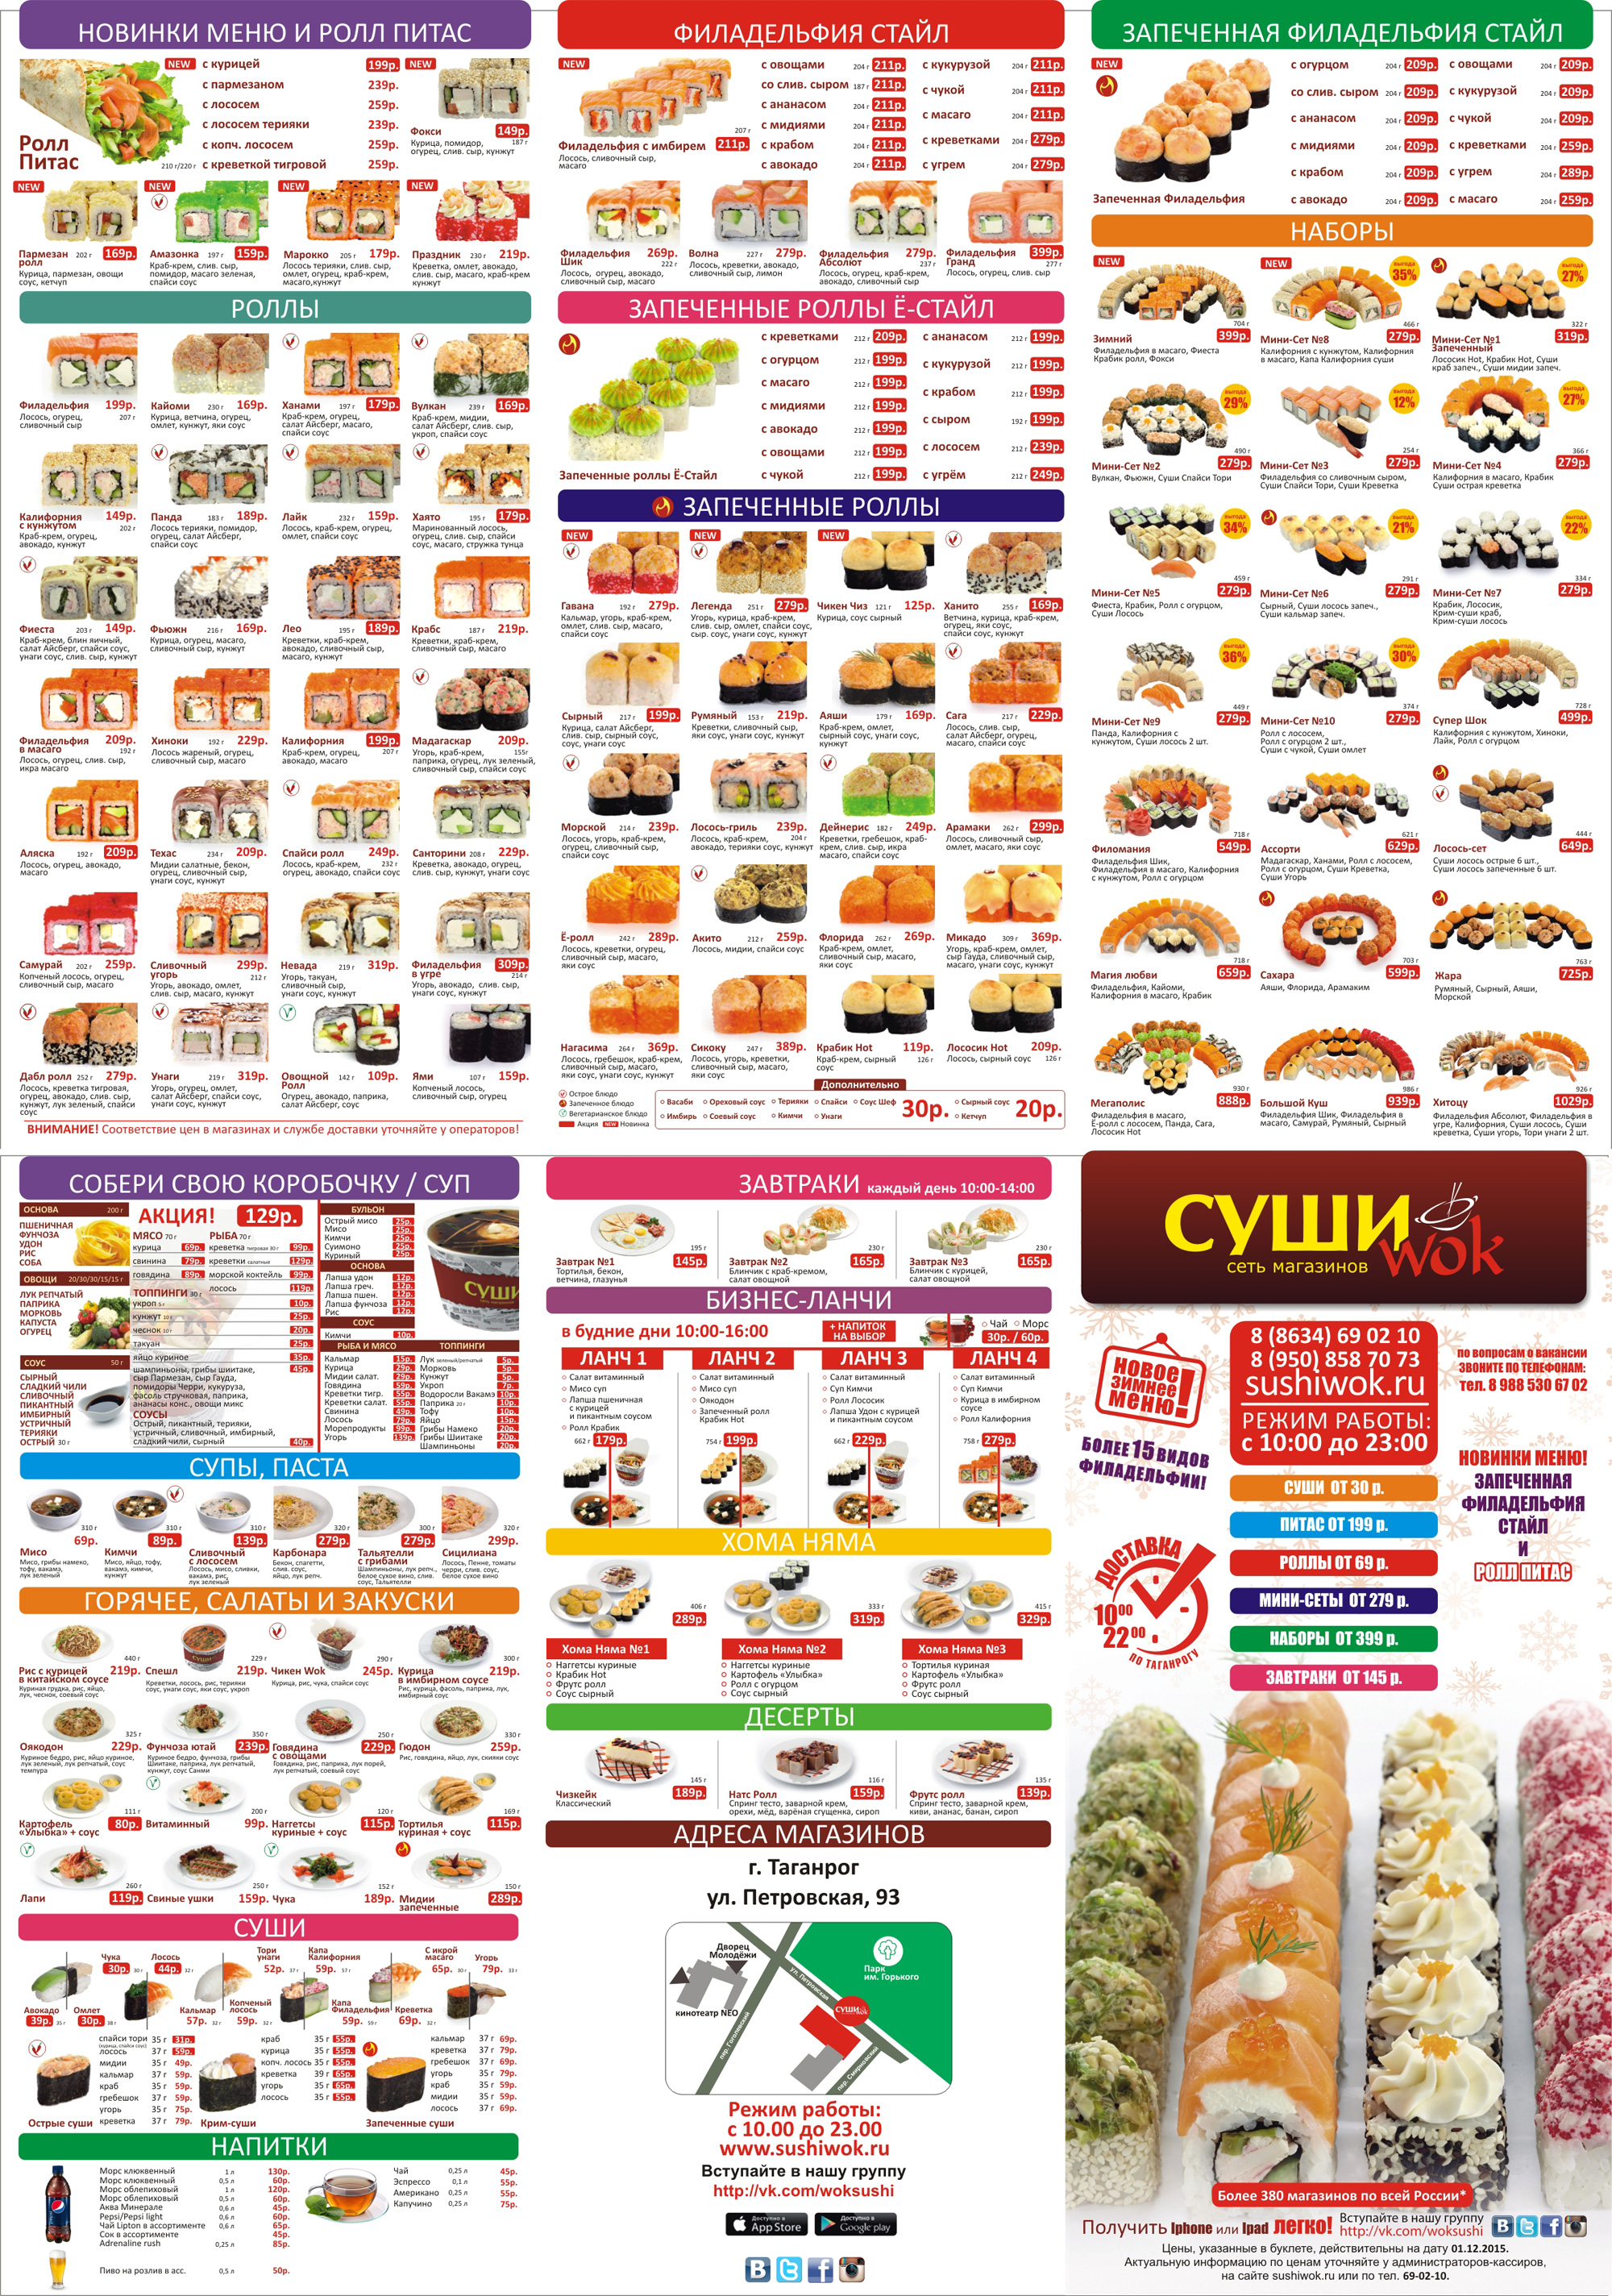 Суши вок санкт петербург меню наборы цены (120) фото